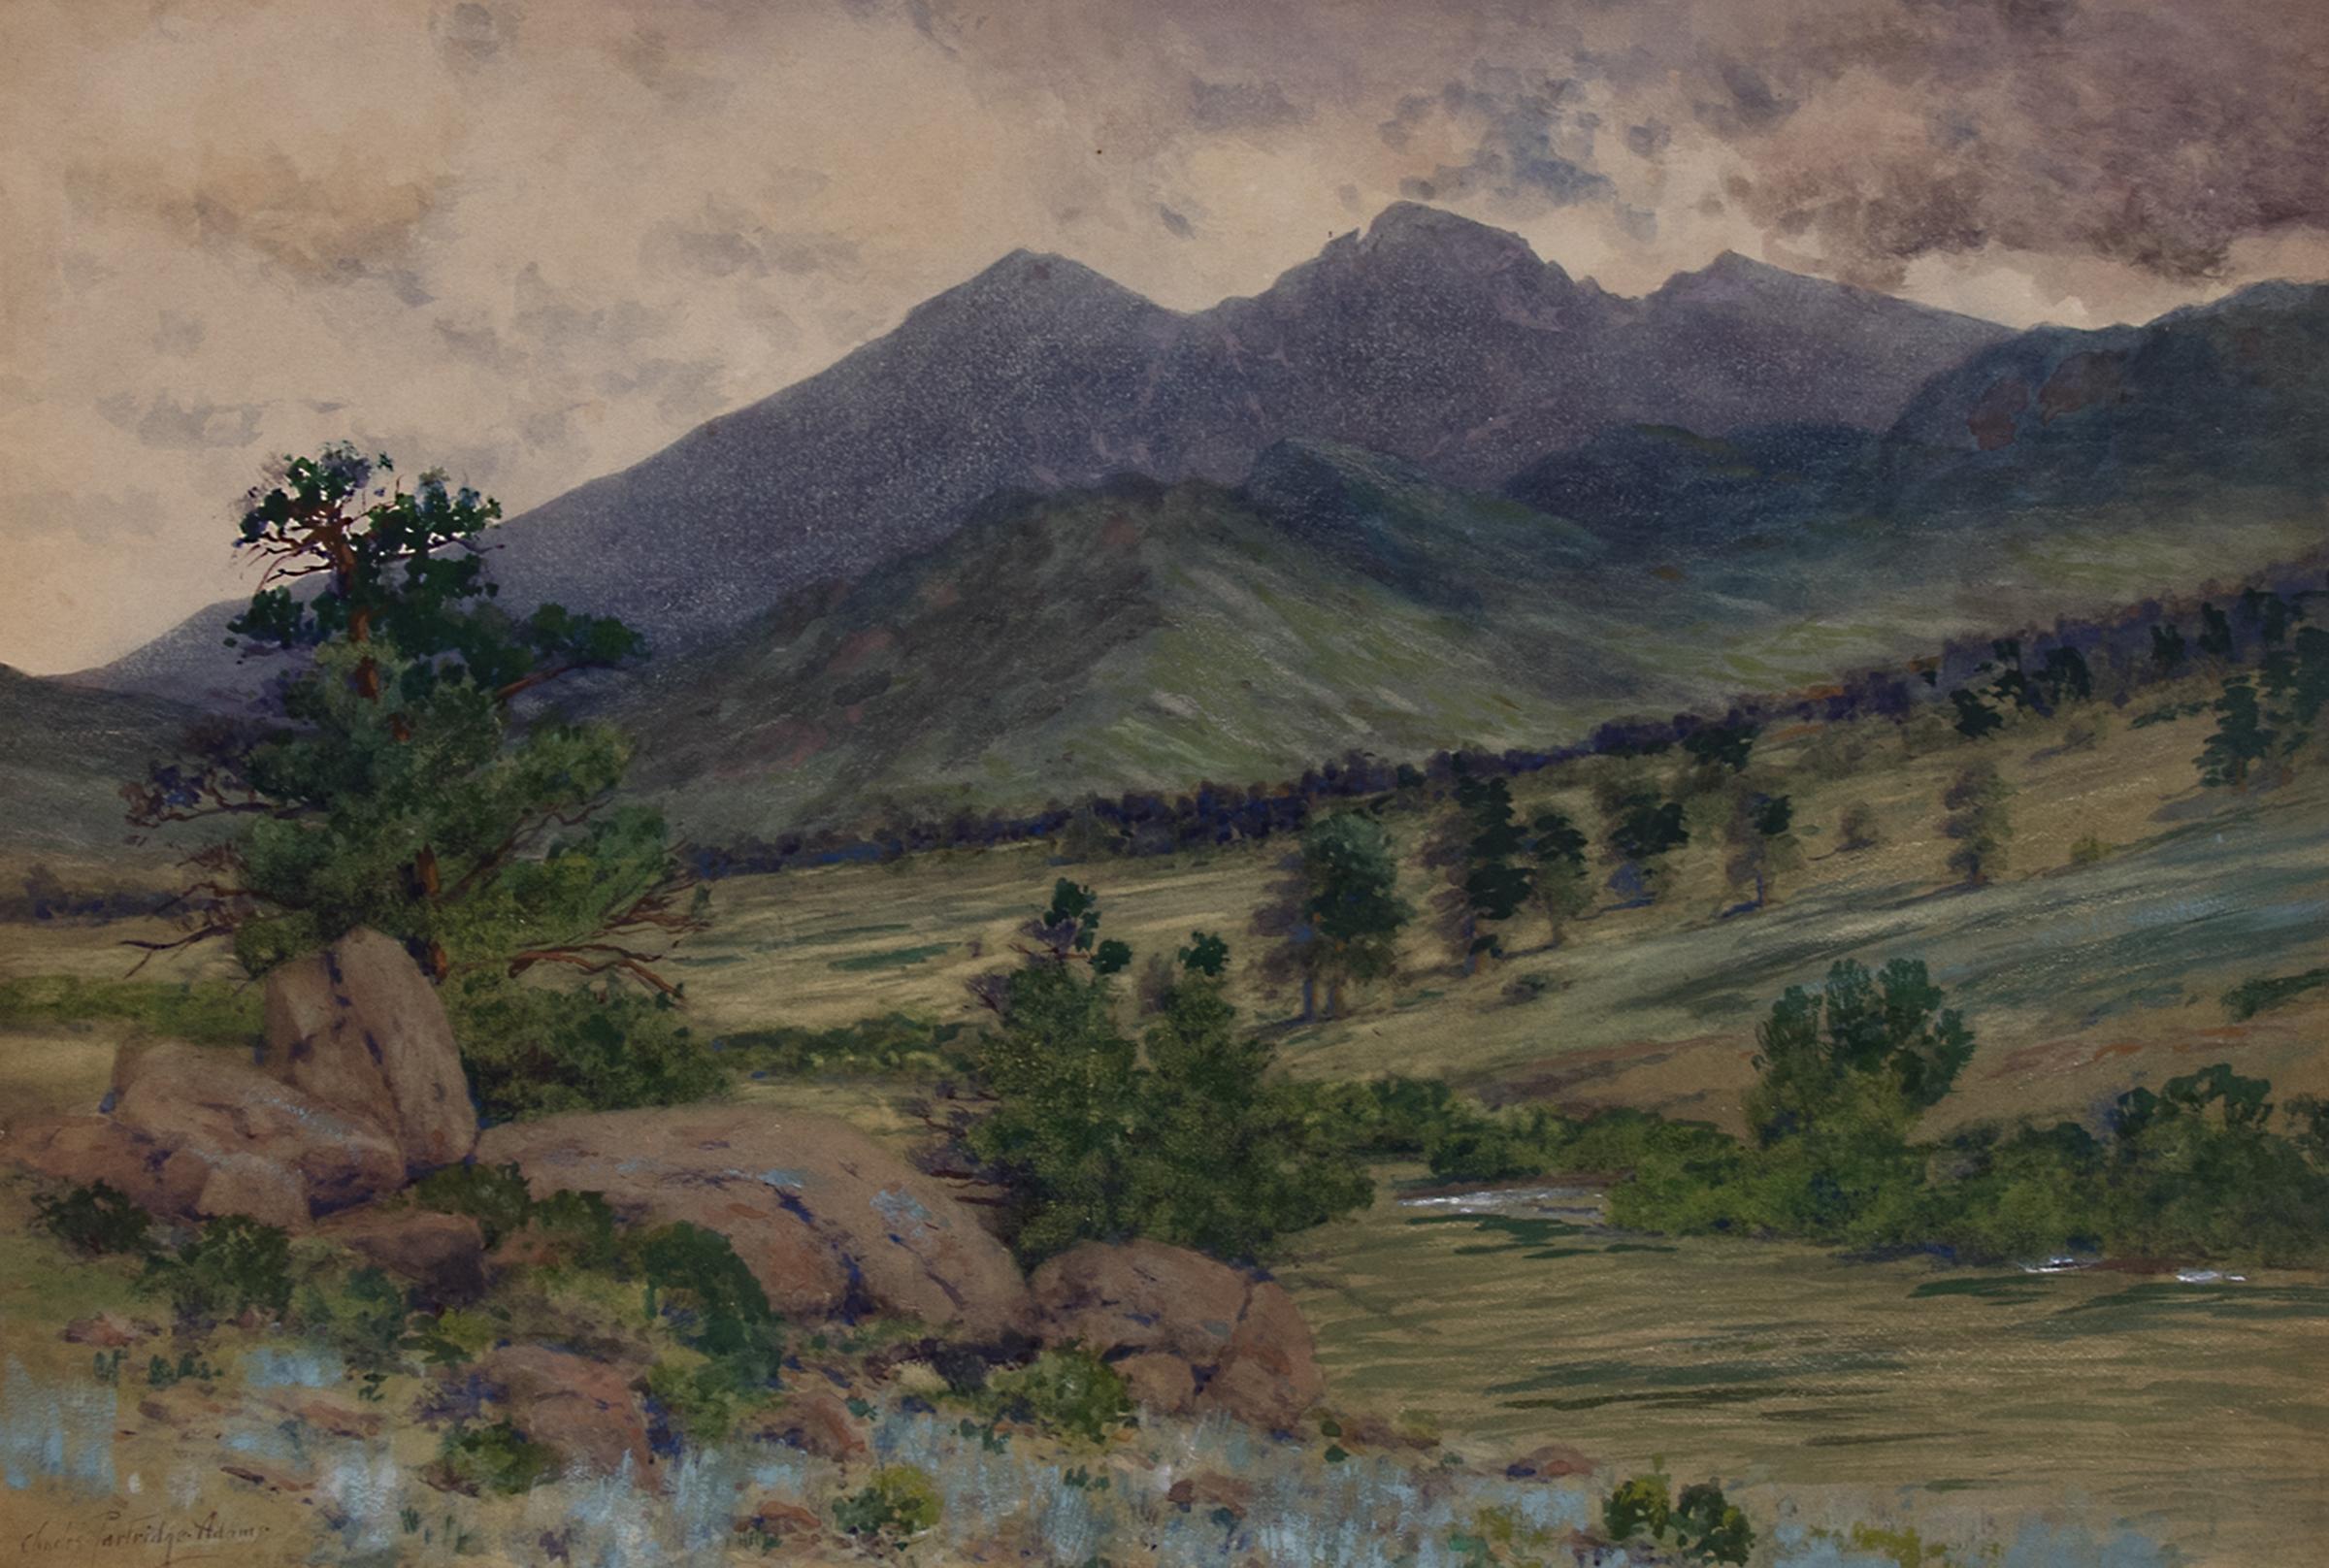 Scene in the Rockies - Painting by Charles Partridge Adams